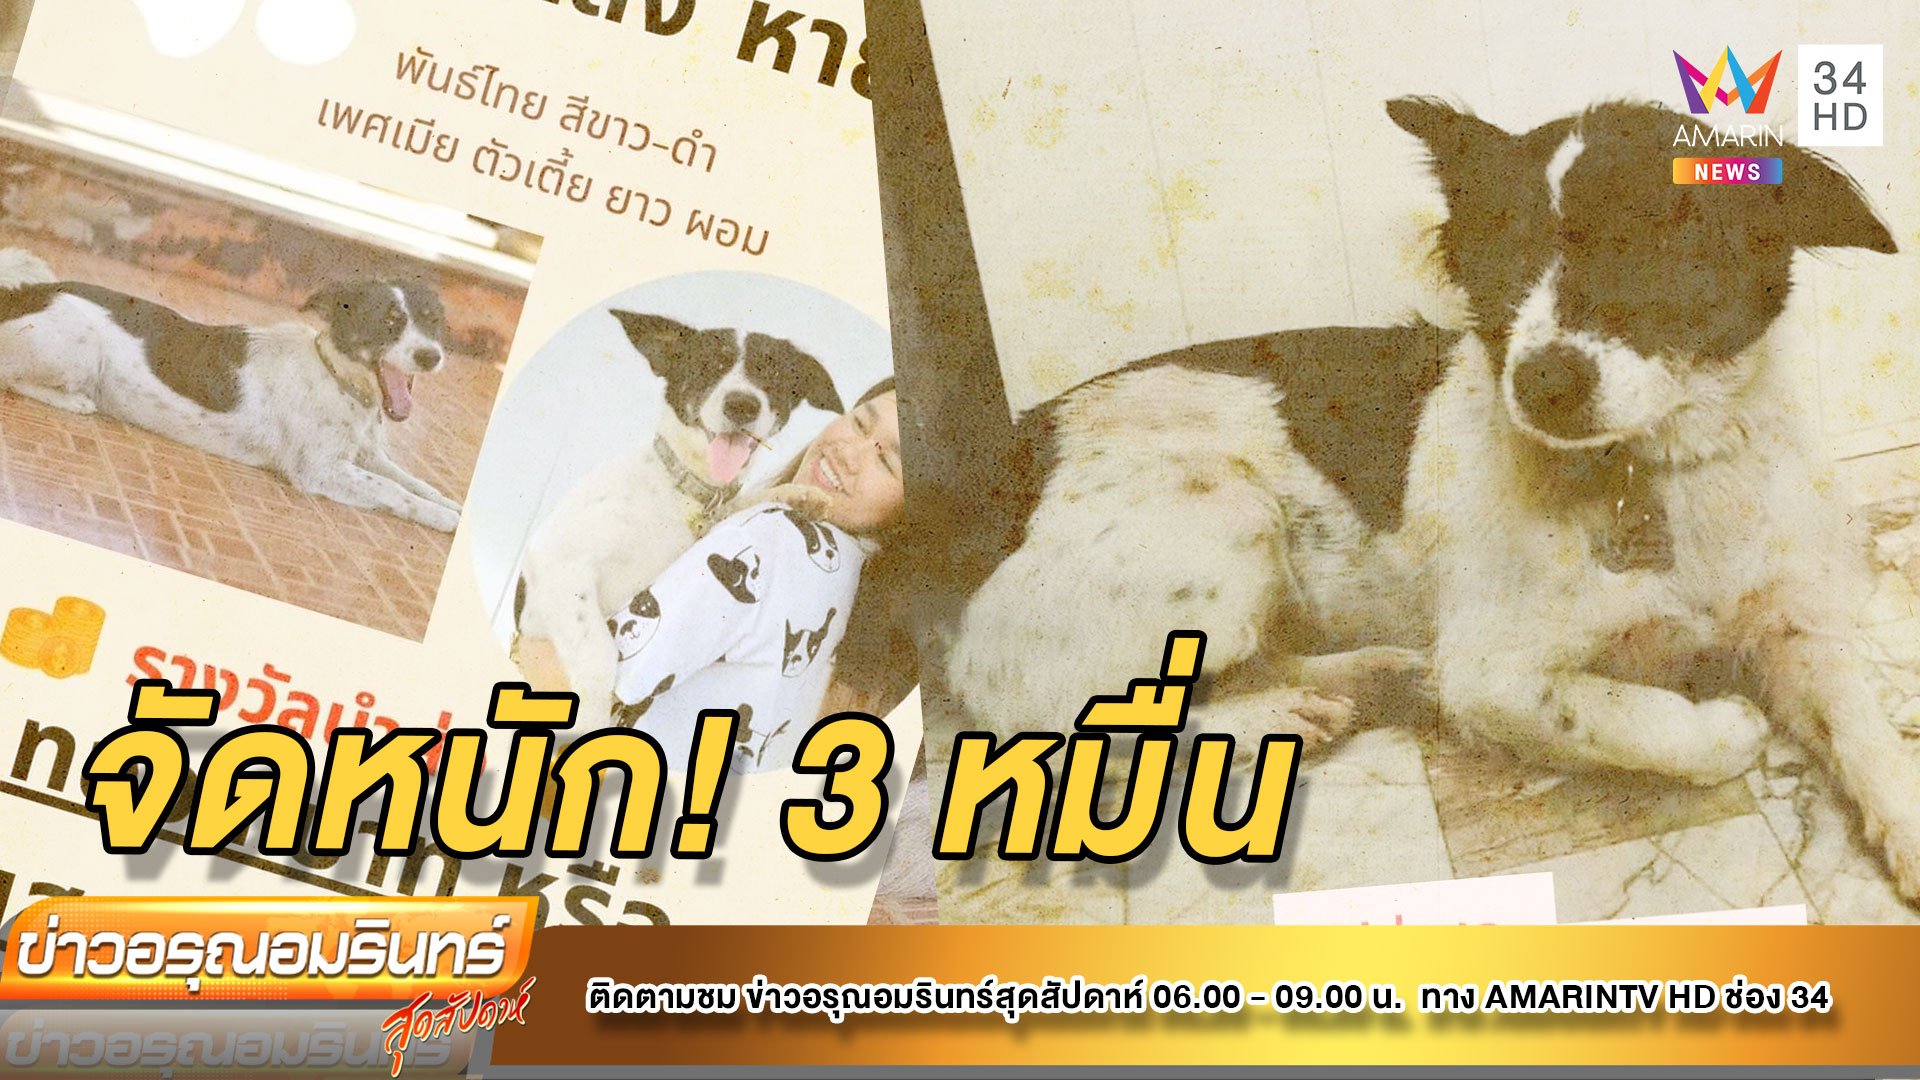 ใจป้ำ! จ่ายทอง 1 บาท - เงิน 3 หมื่น ตามหา “หลิงหลิง” หมาพันธุ์ไทย  | ข่าวอรุณอมรินทร์ | 13 พ.ย. 64 | AMARIN TVHD34